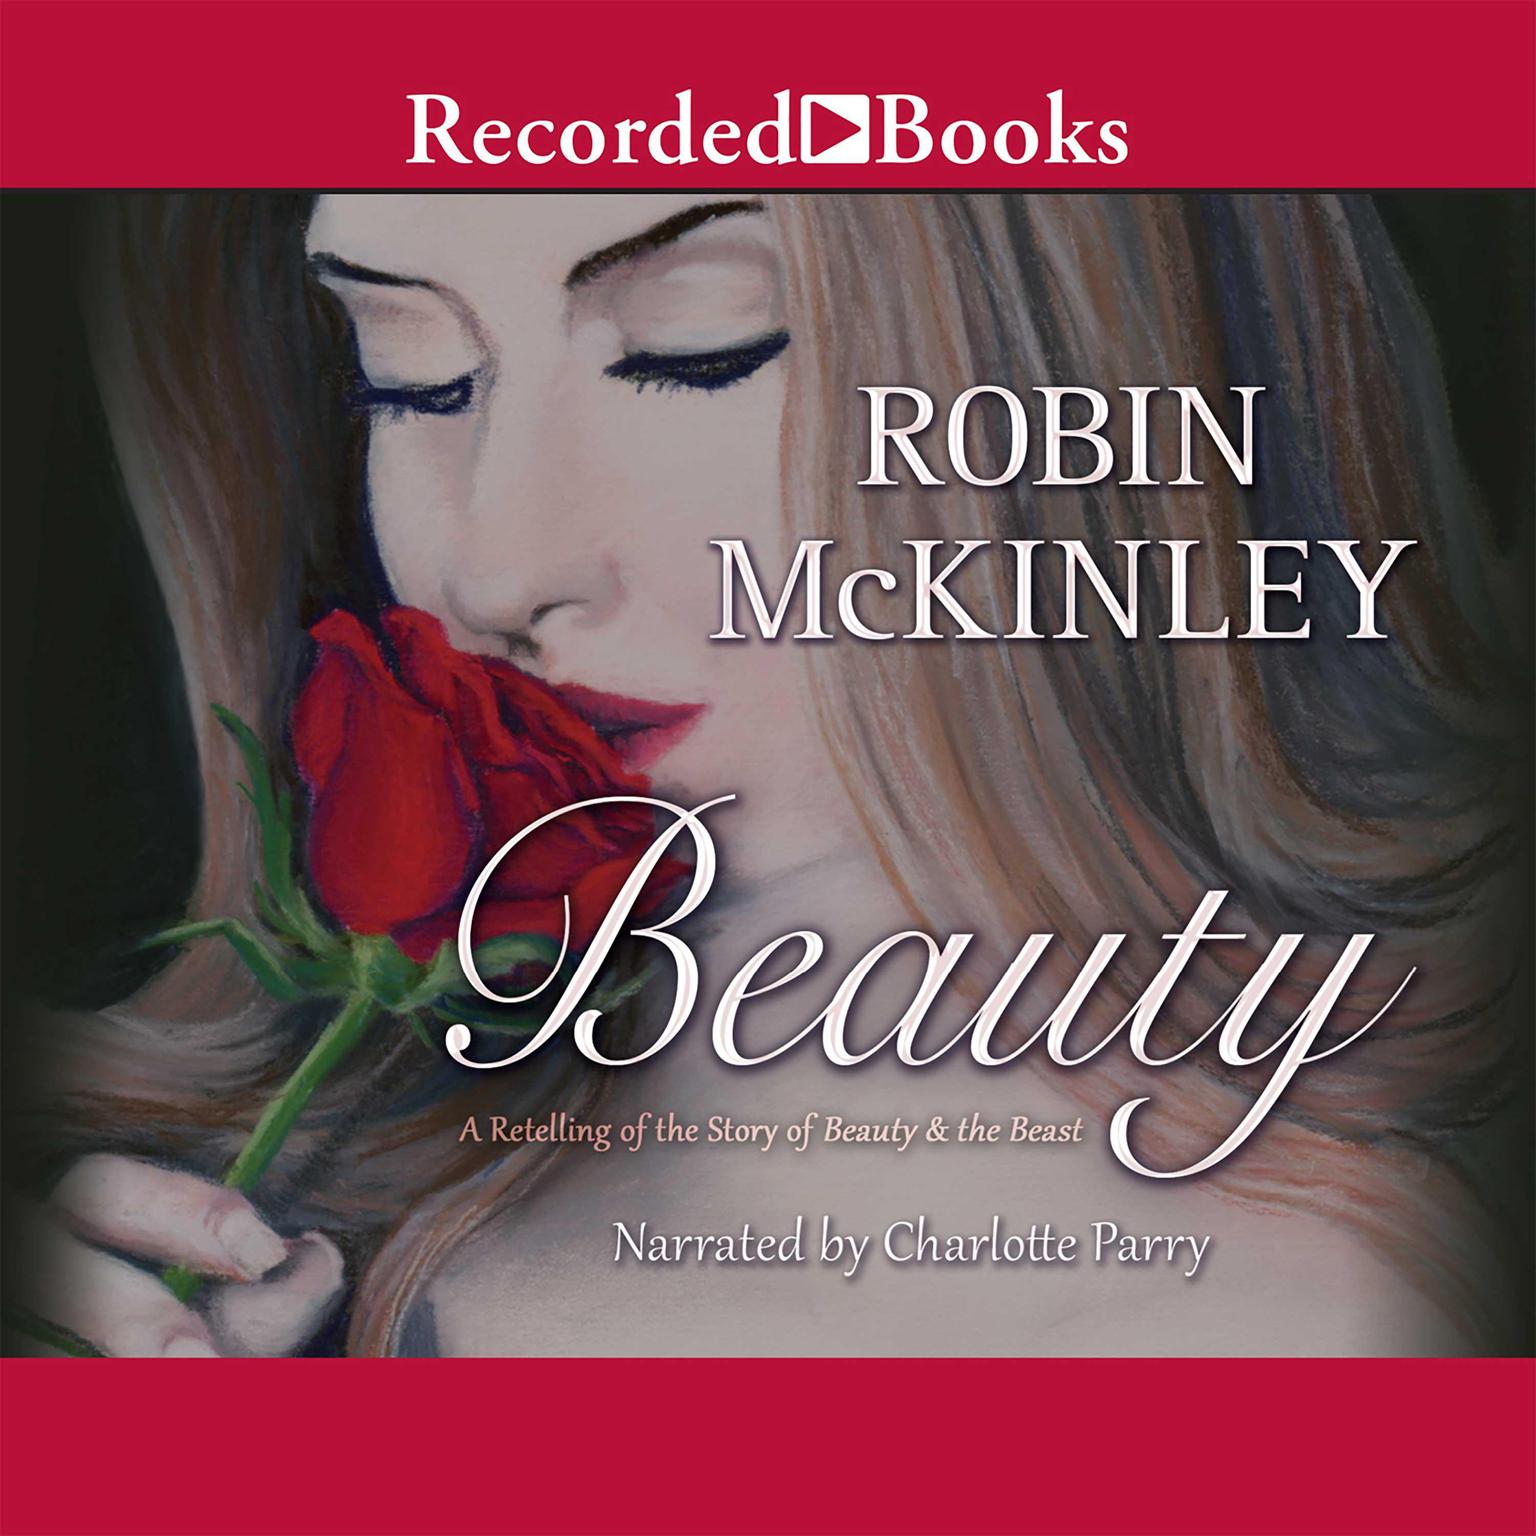 Robin McKinley: Beauty (1993, HarperTrophy)